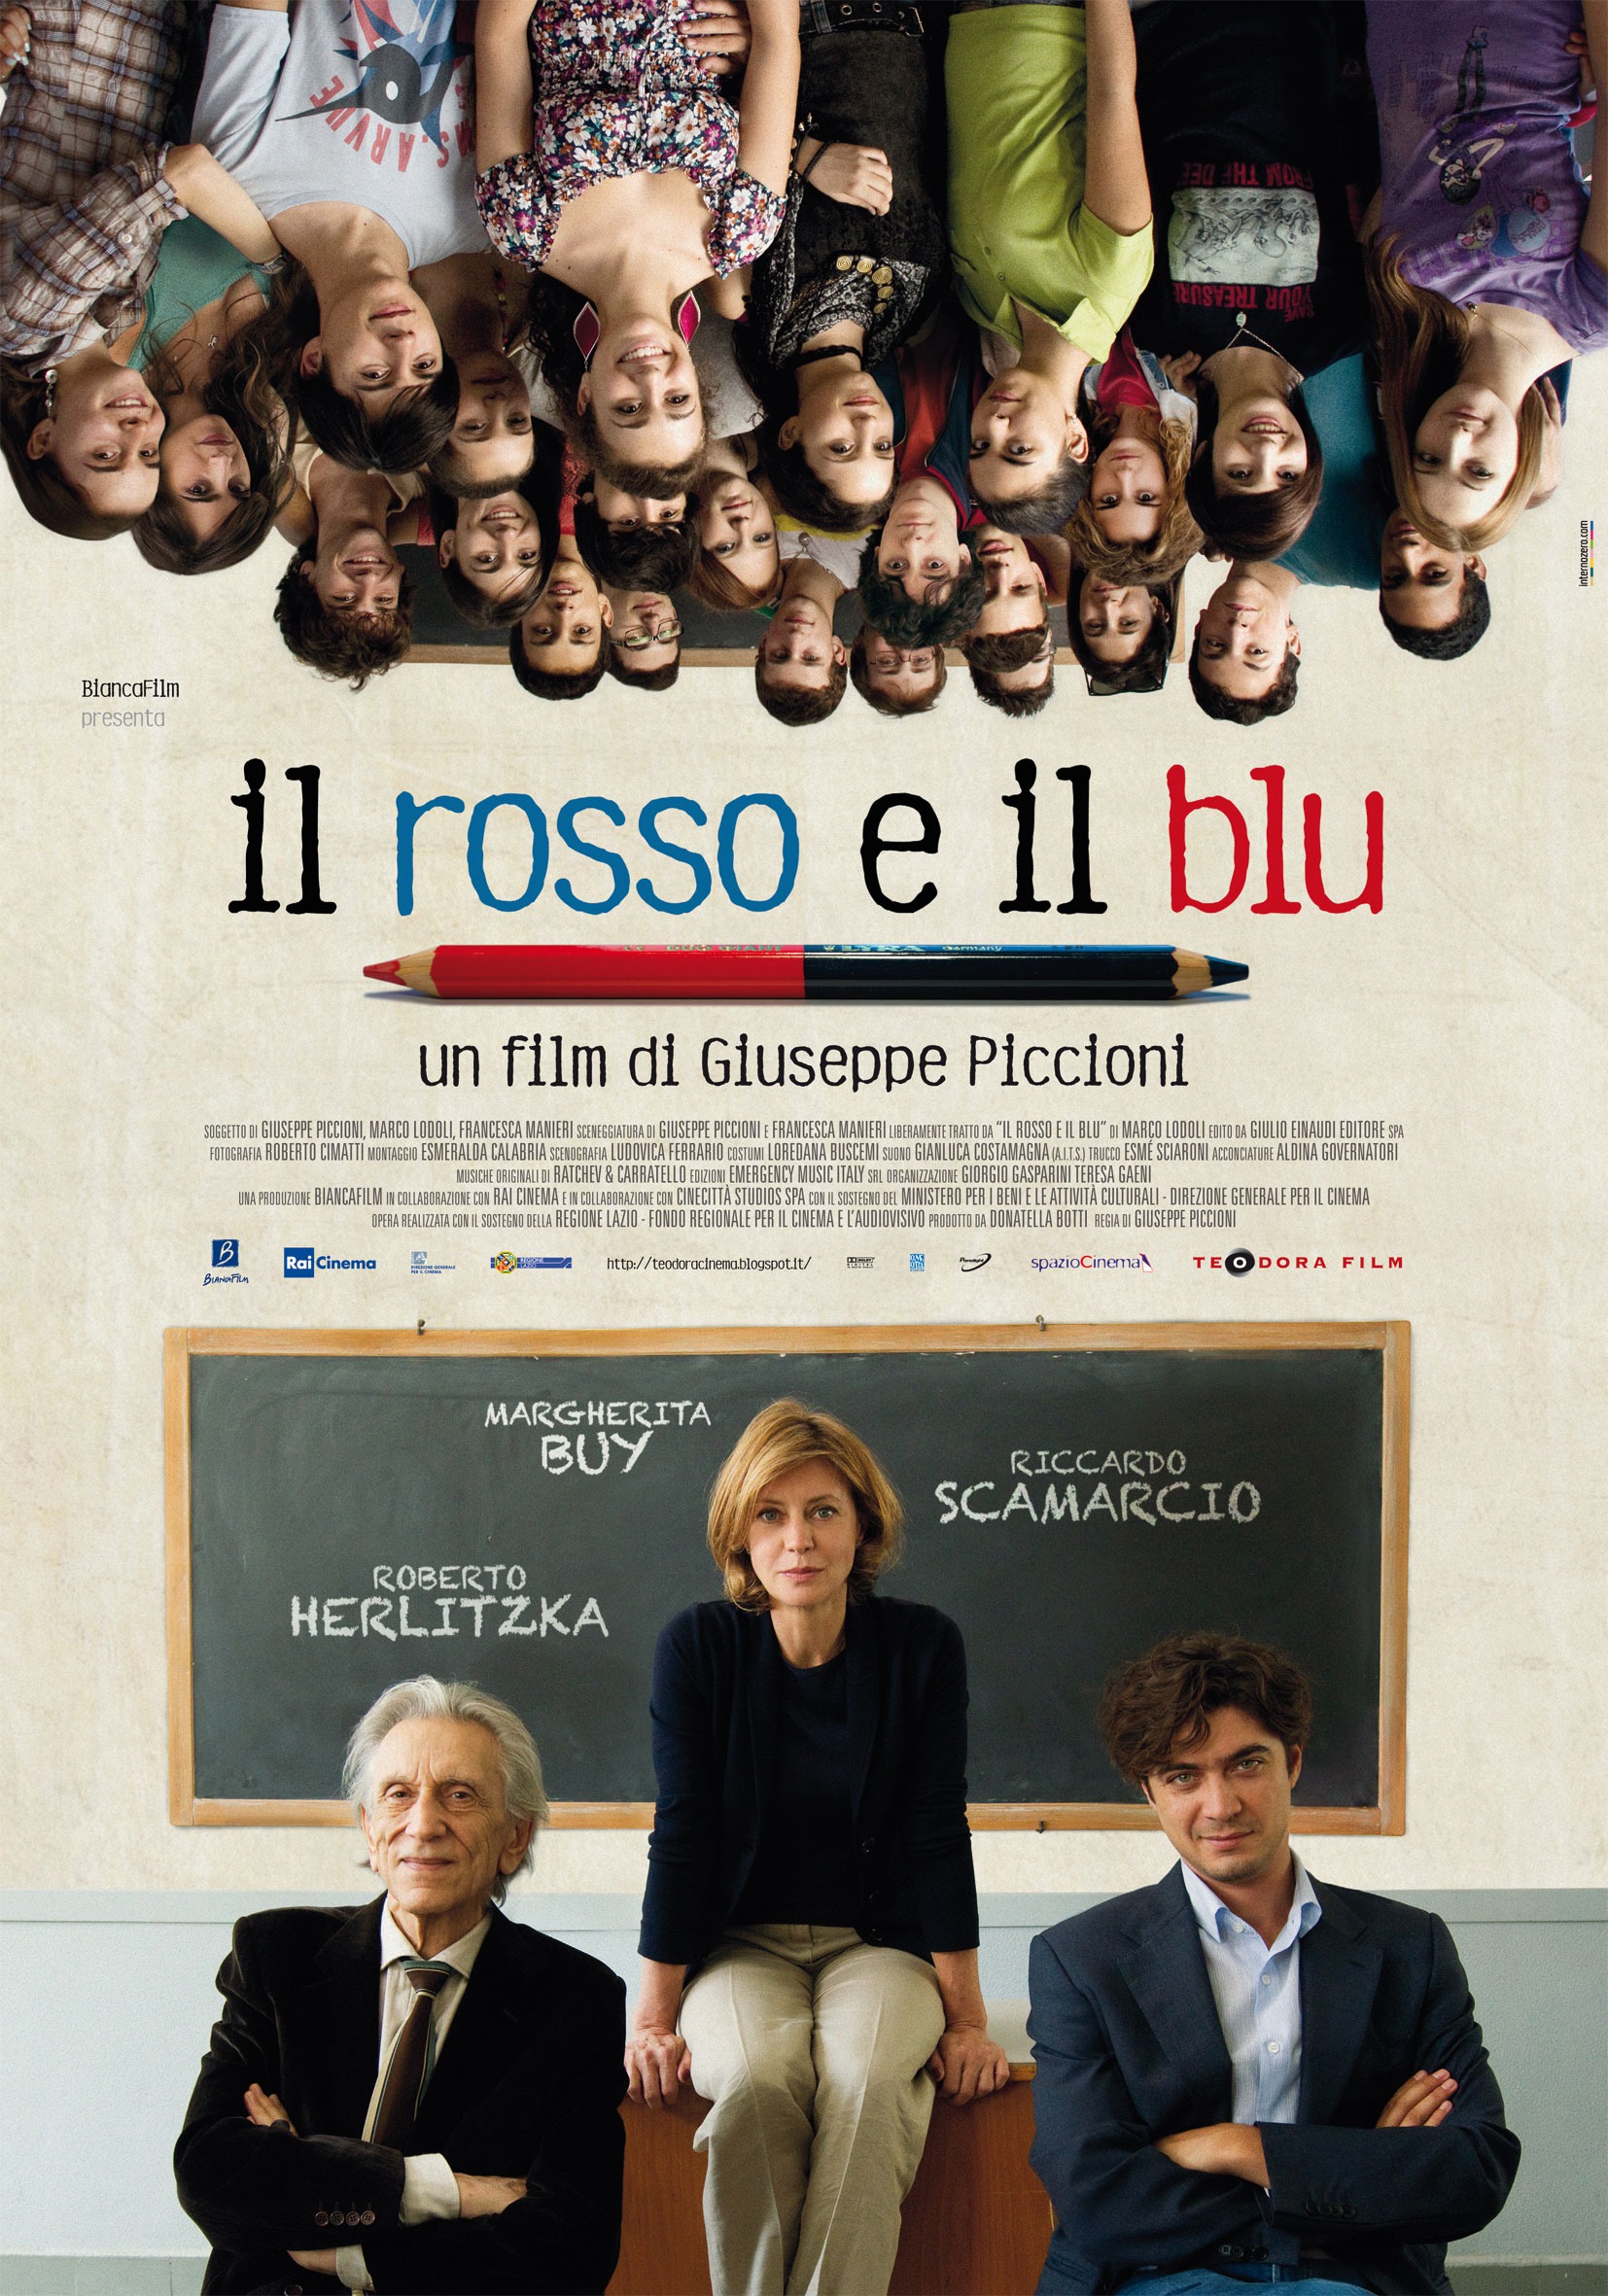 Mega Sized Movie Poster Image for Il rosso e il blu 